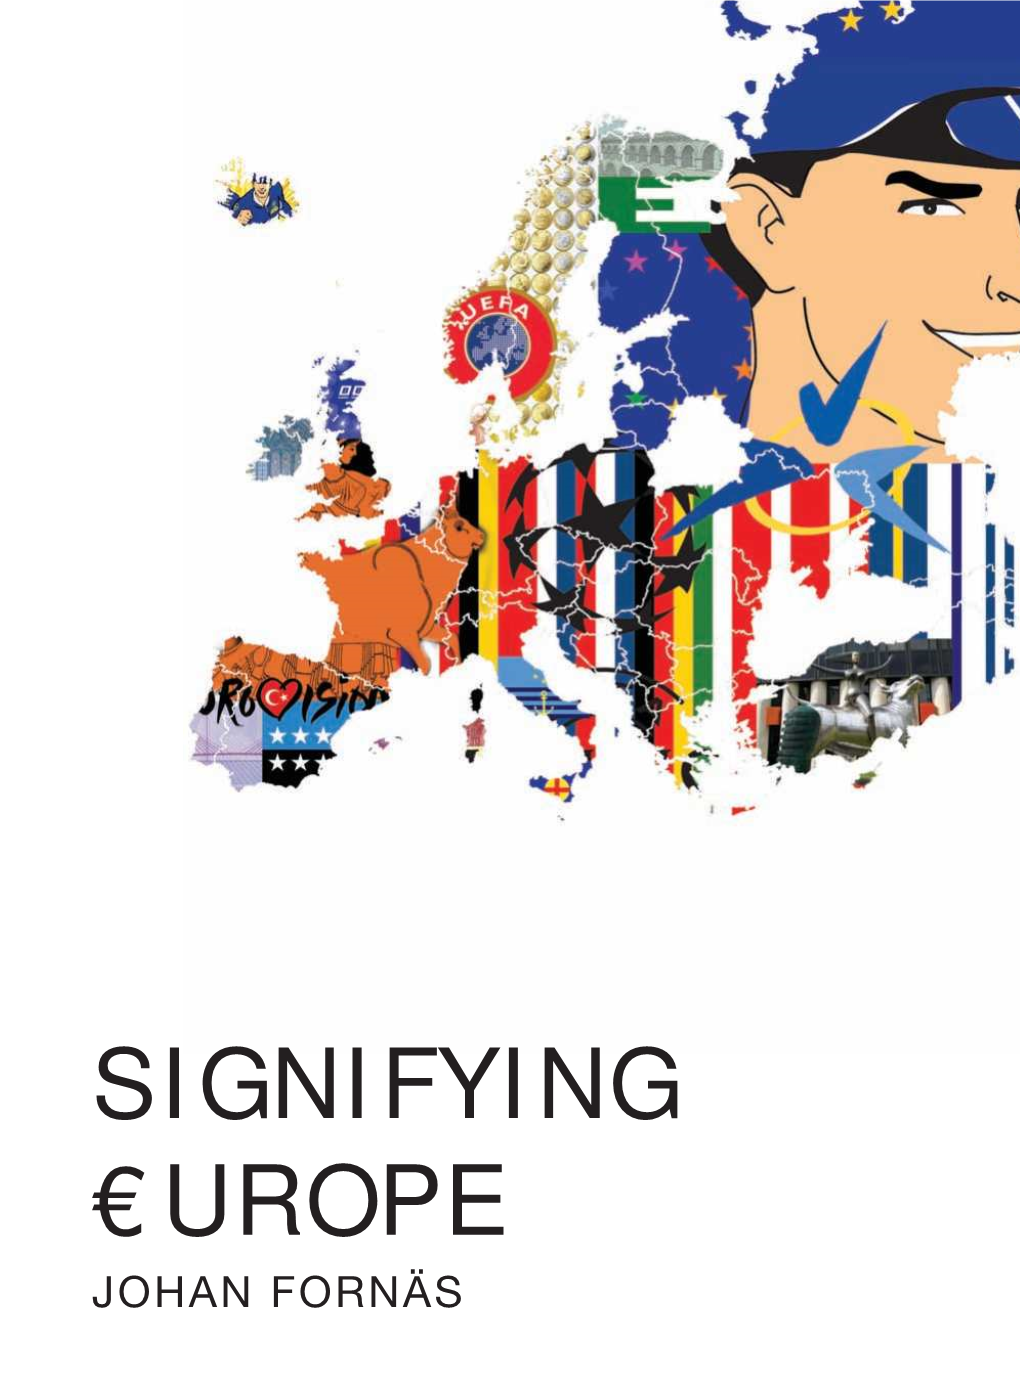 Signifying Europe